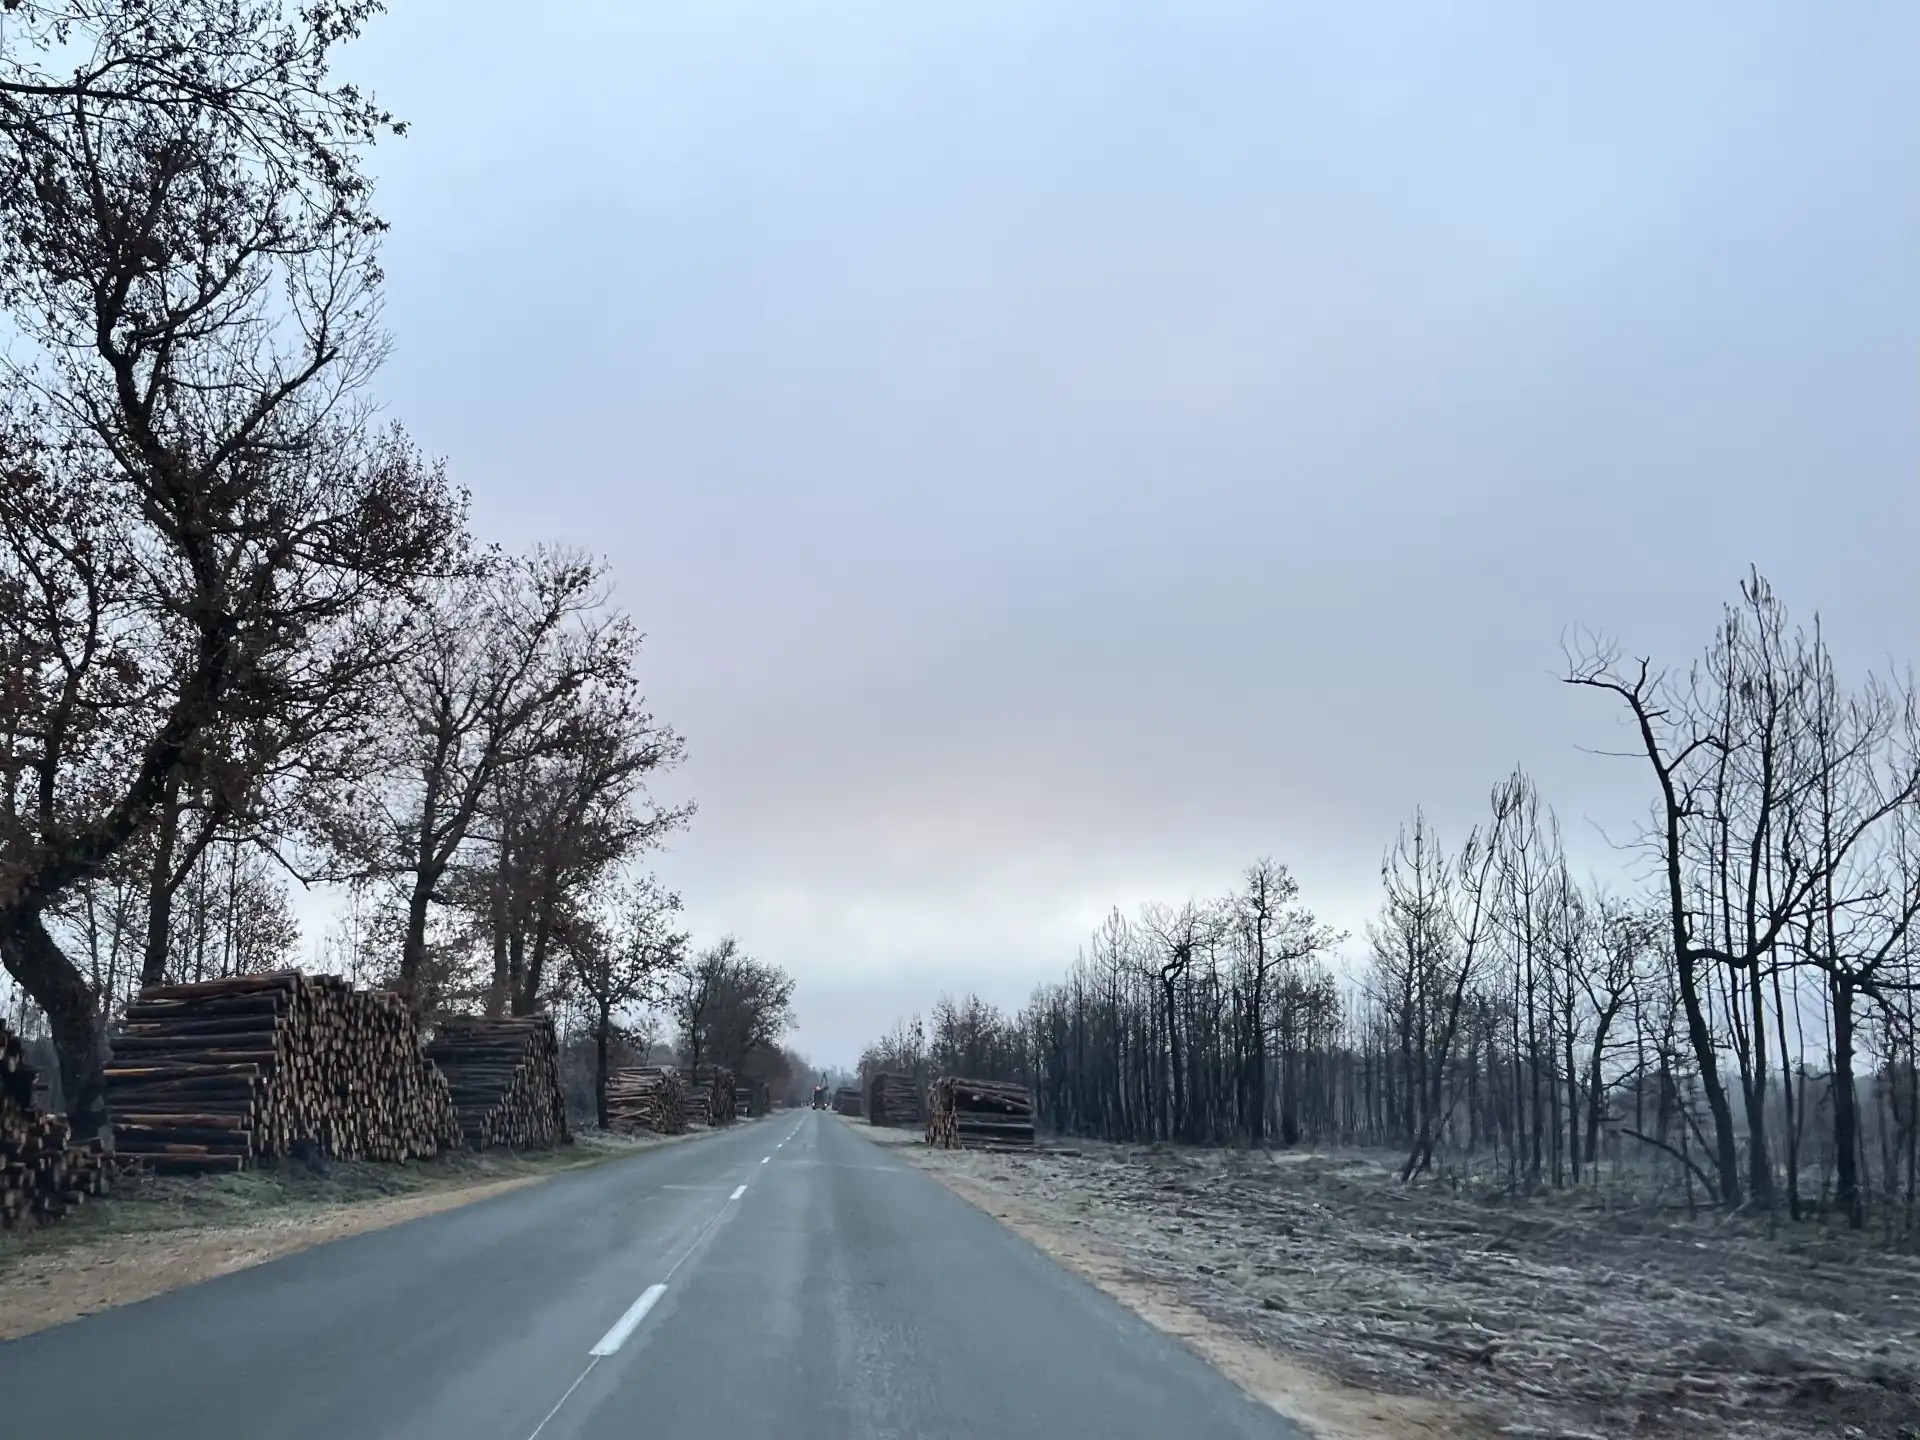 Forêt des Landes de Gascogne après les incendies